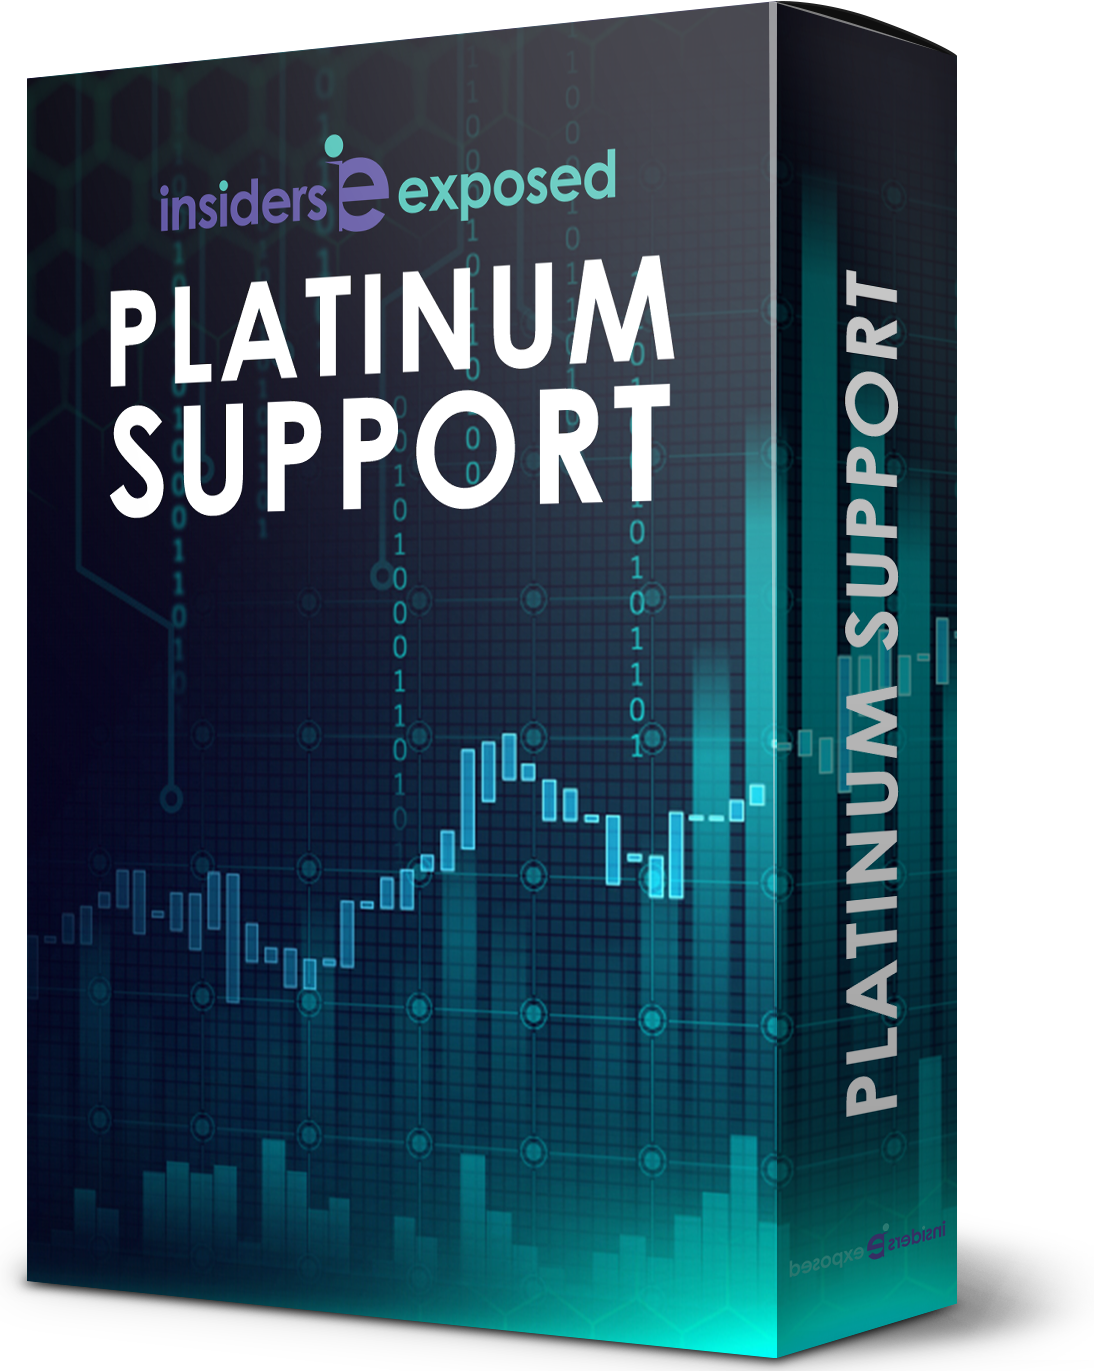 Platimum Support Product Image